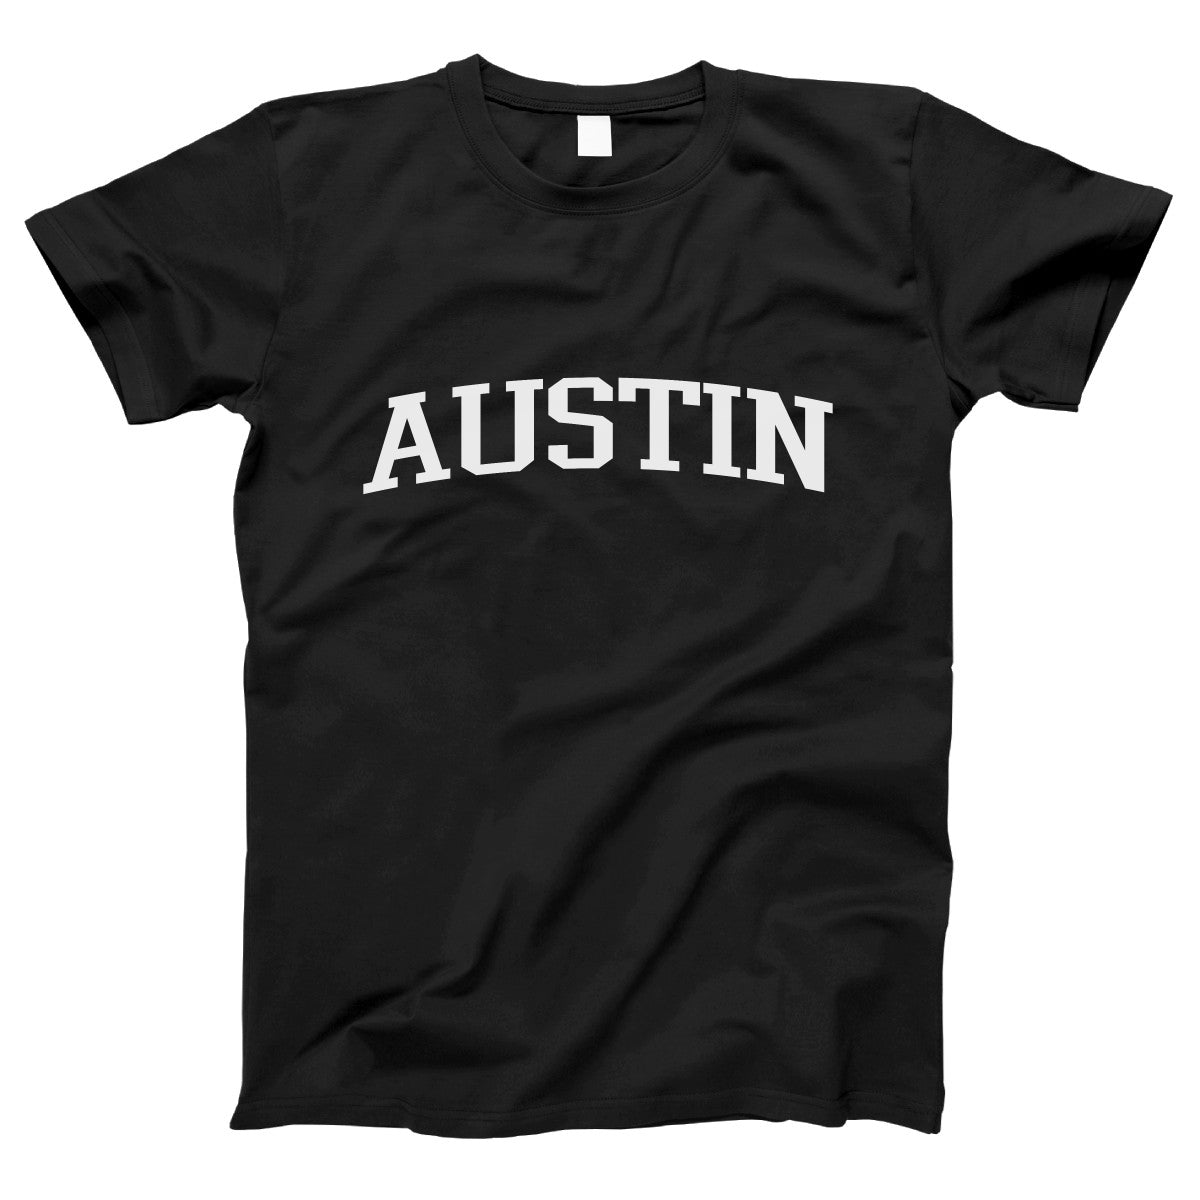 Austin Women's T-shirt